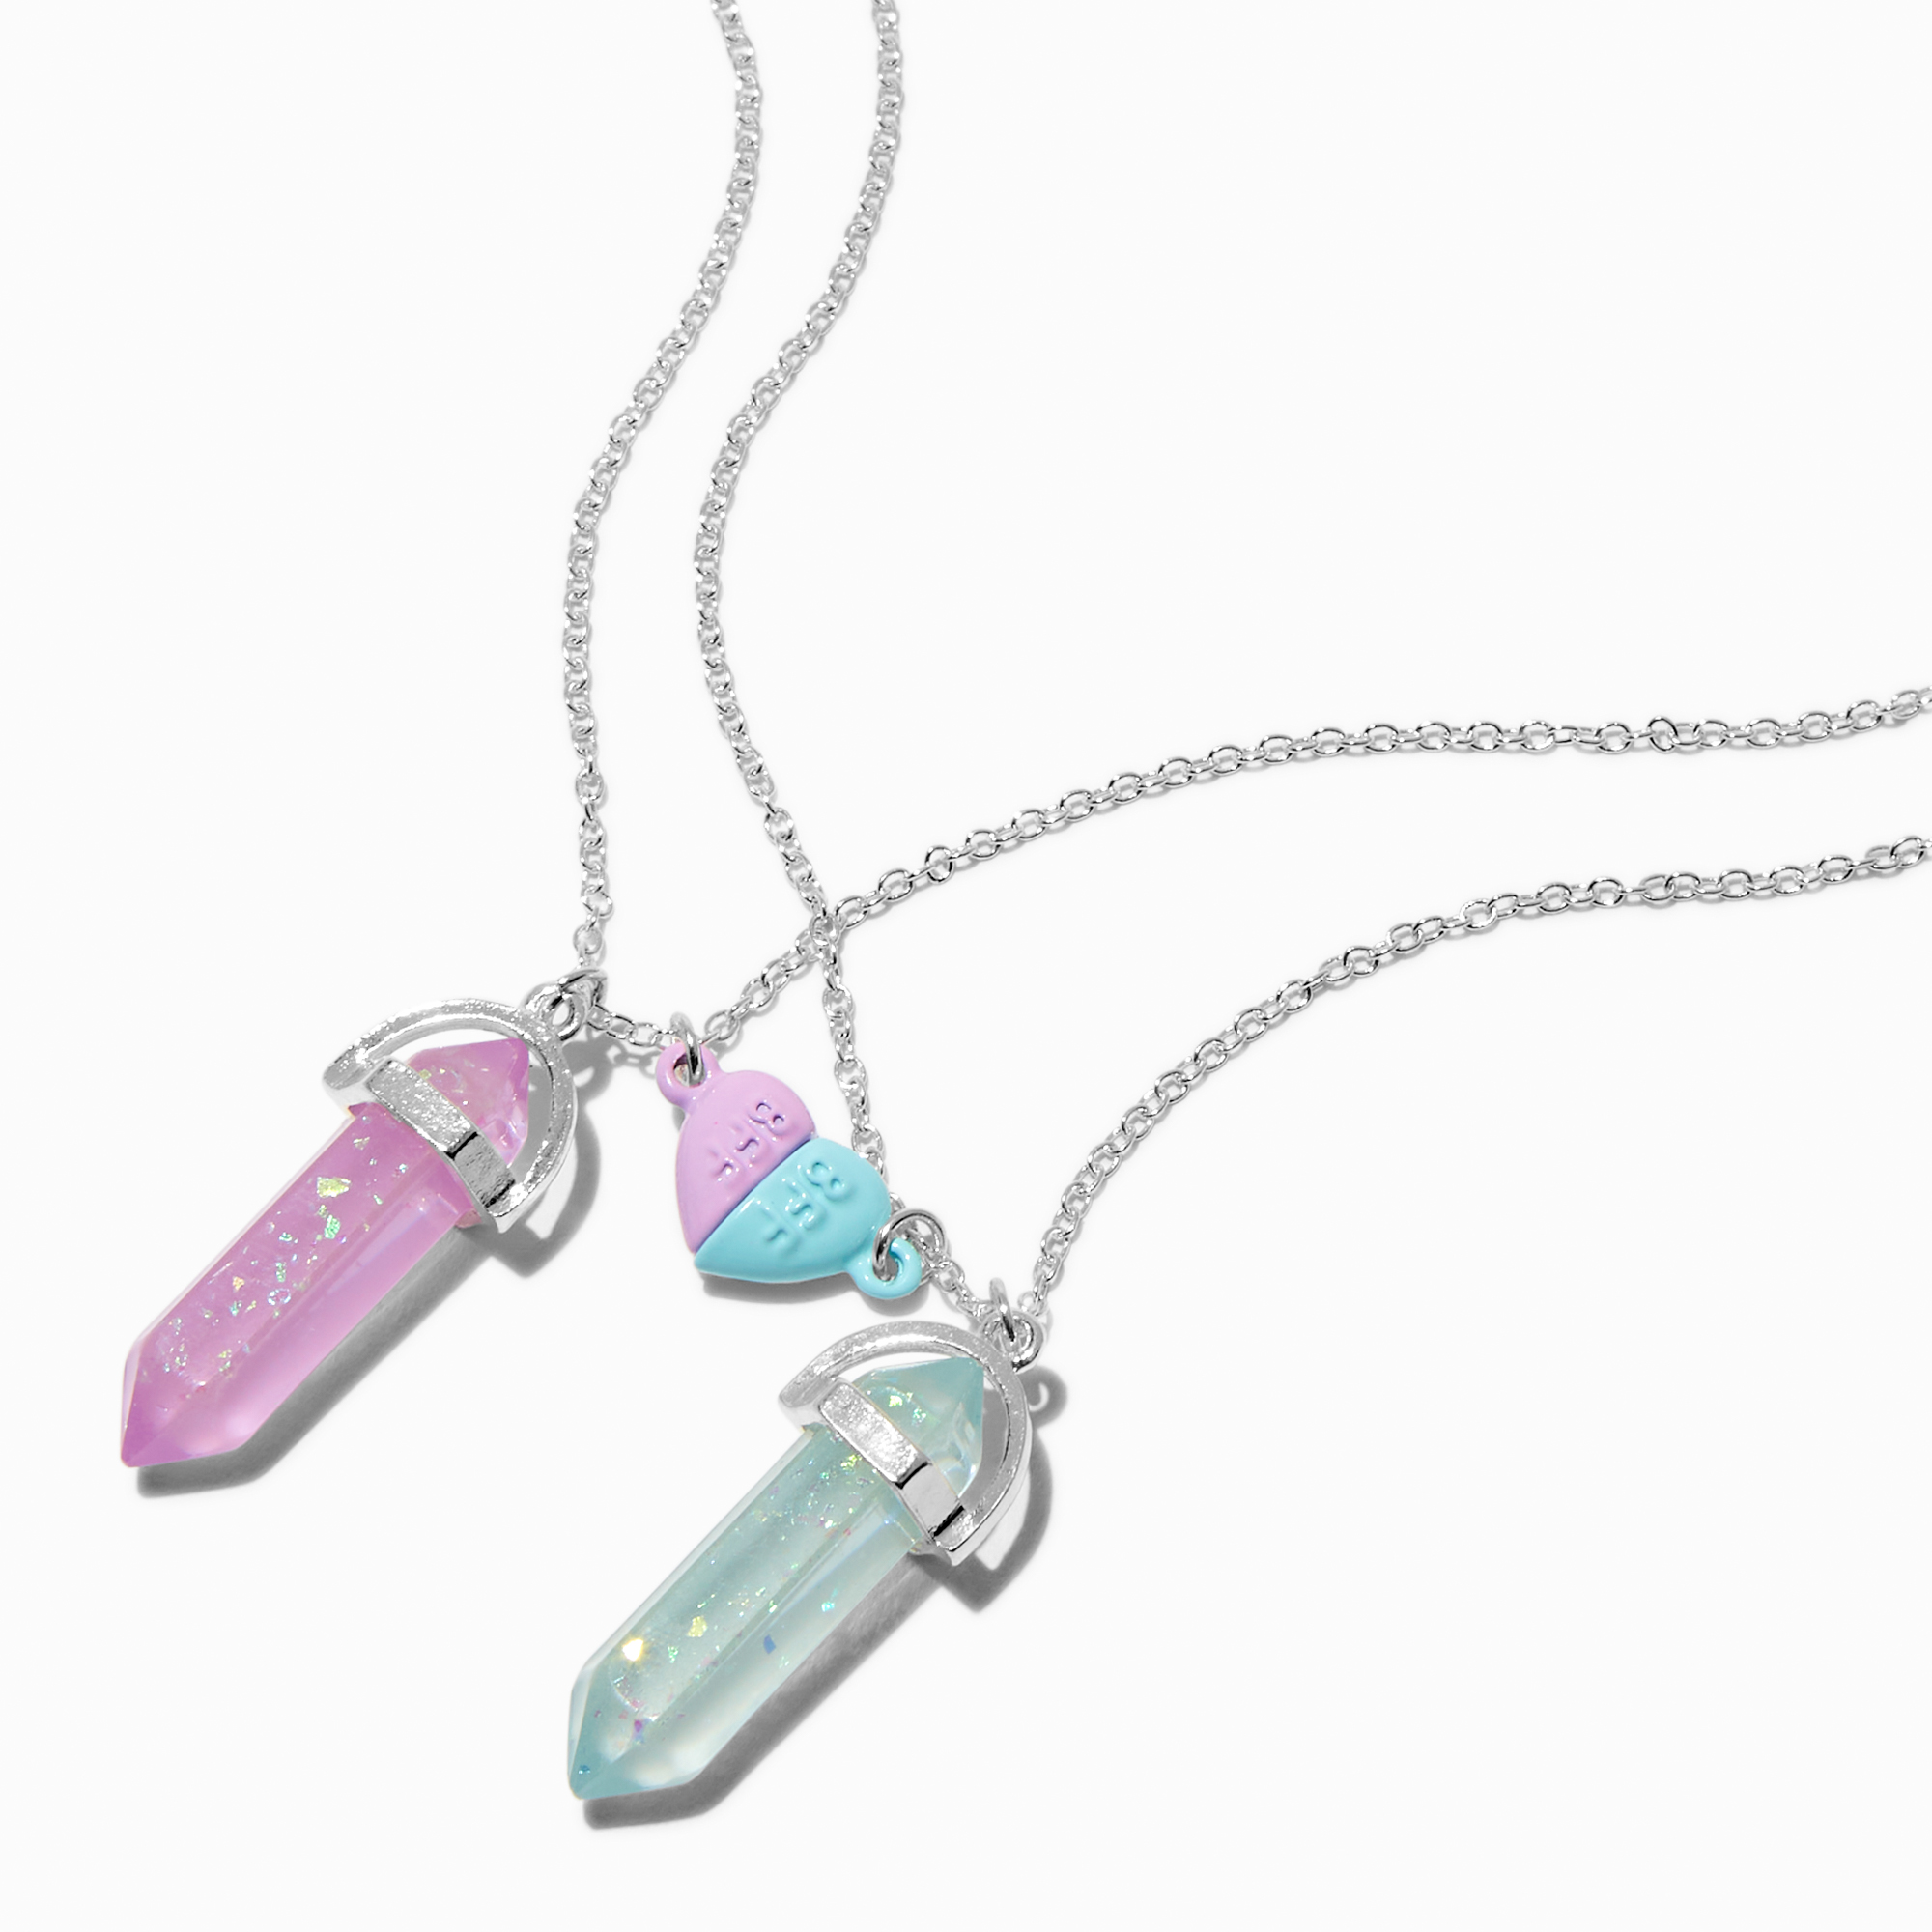 Best Friends Pink & Purple Heart Pendant Necklaces - 2 Pack | Claire's US